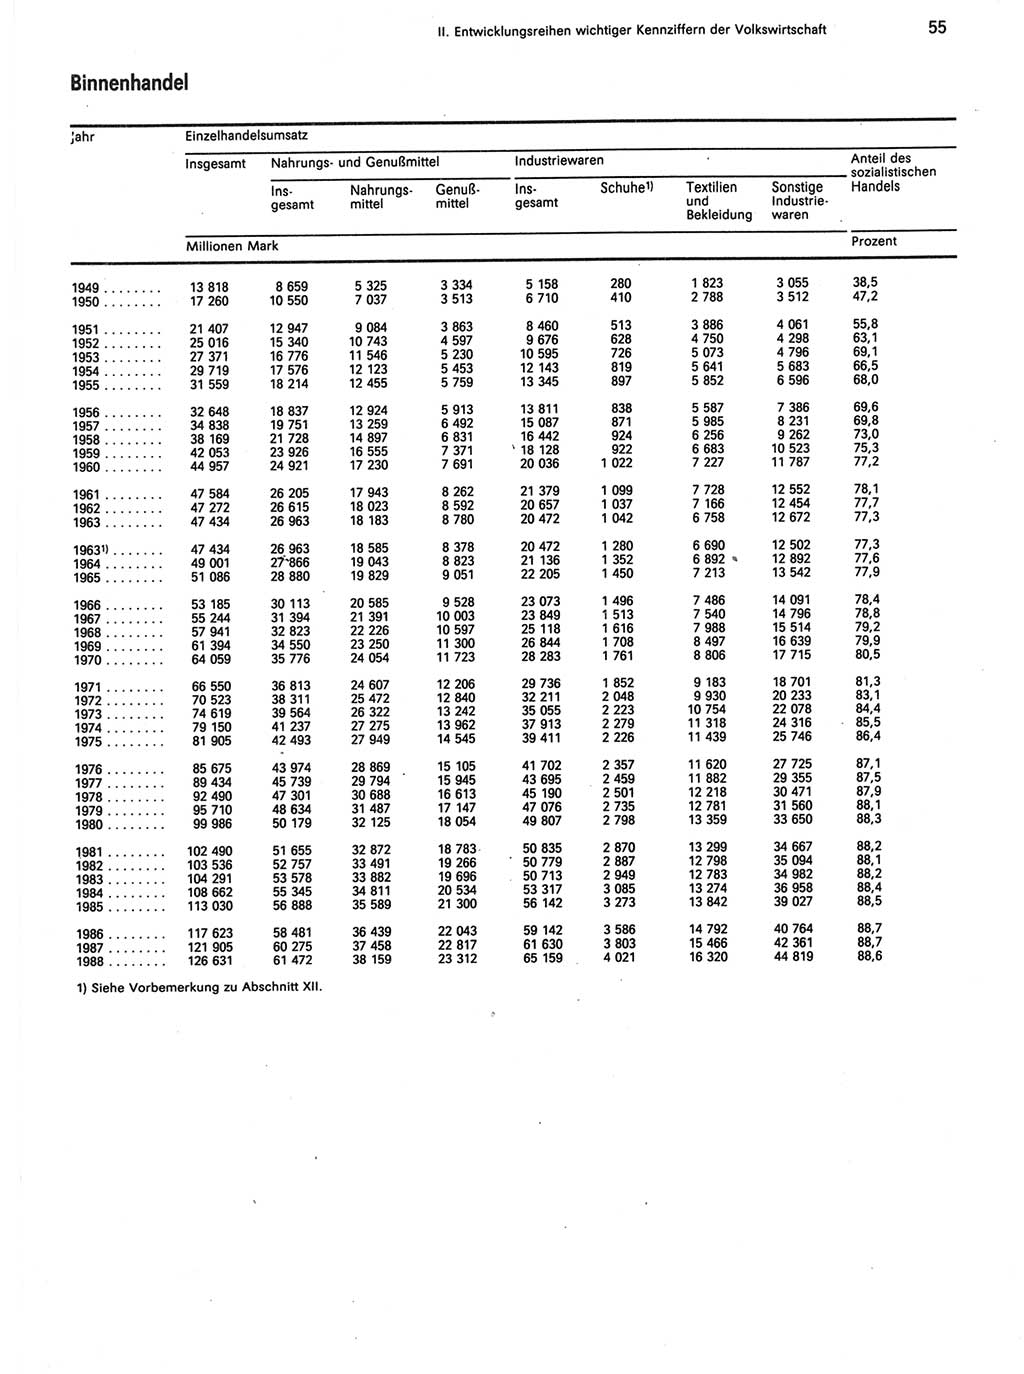 Statistisches Jahrbuch der Deutschen Demokratischen Republik (DDR) 1989, Seite 55 (Stat. Jb. DDR 1989, S. 55)